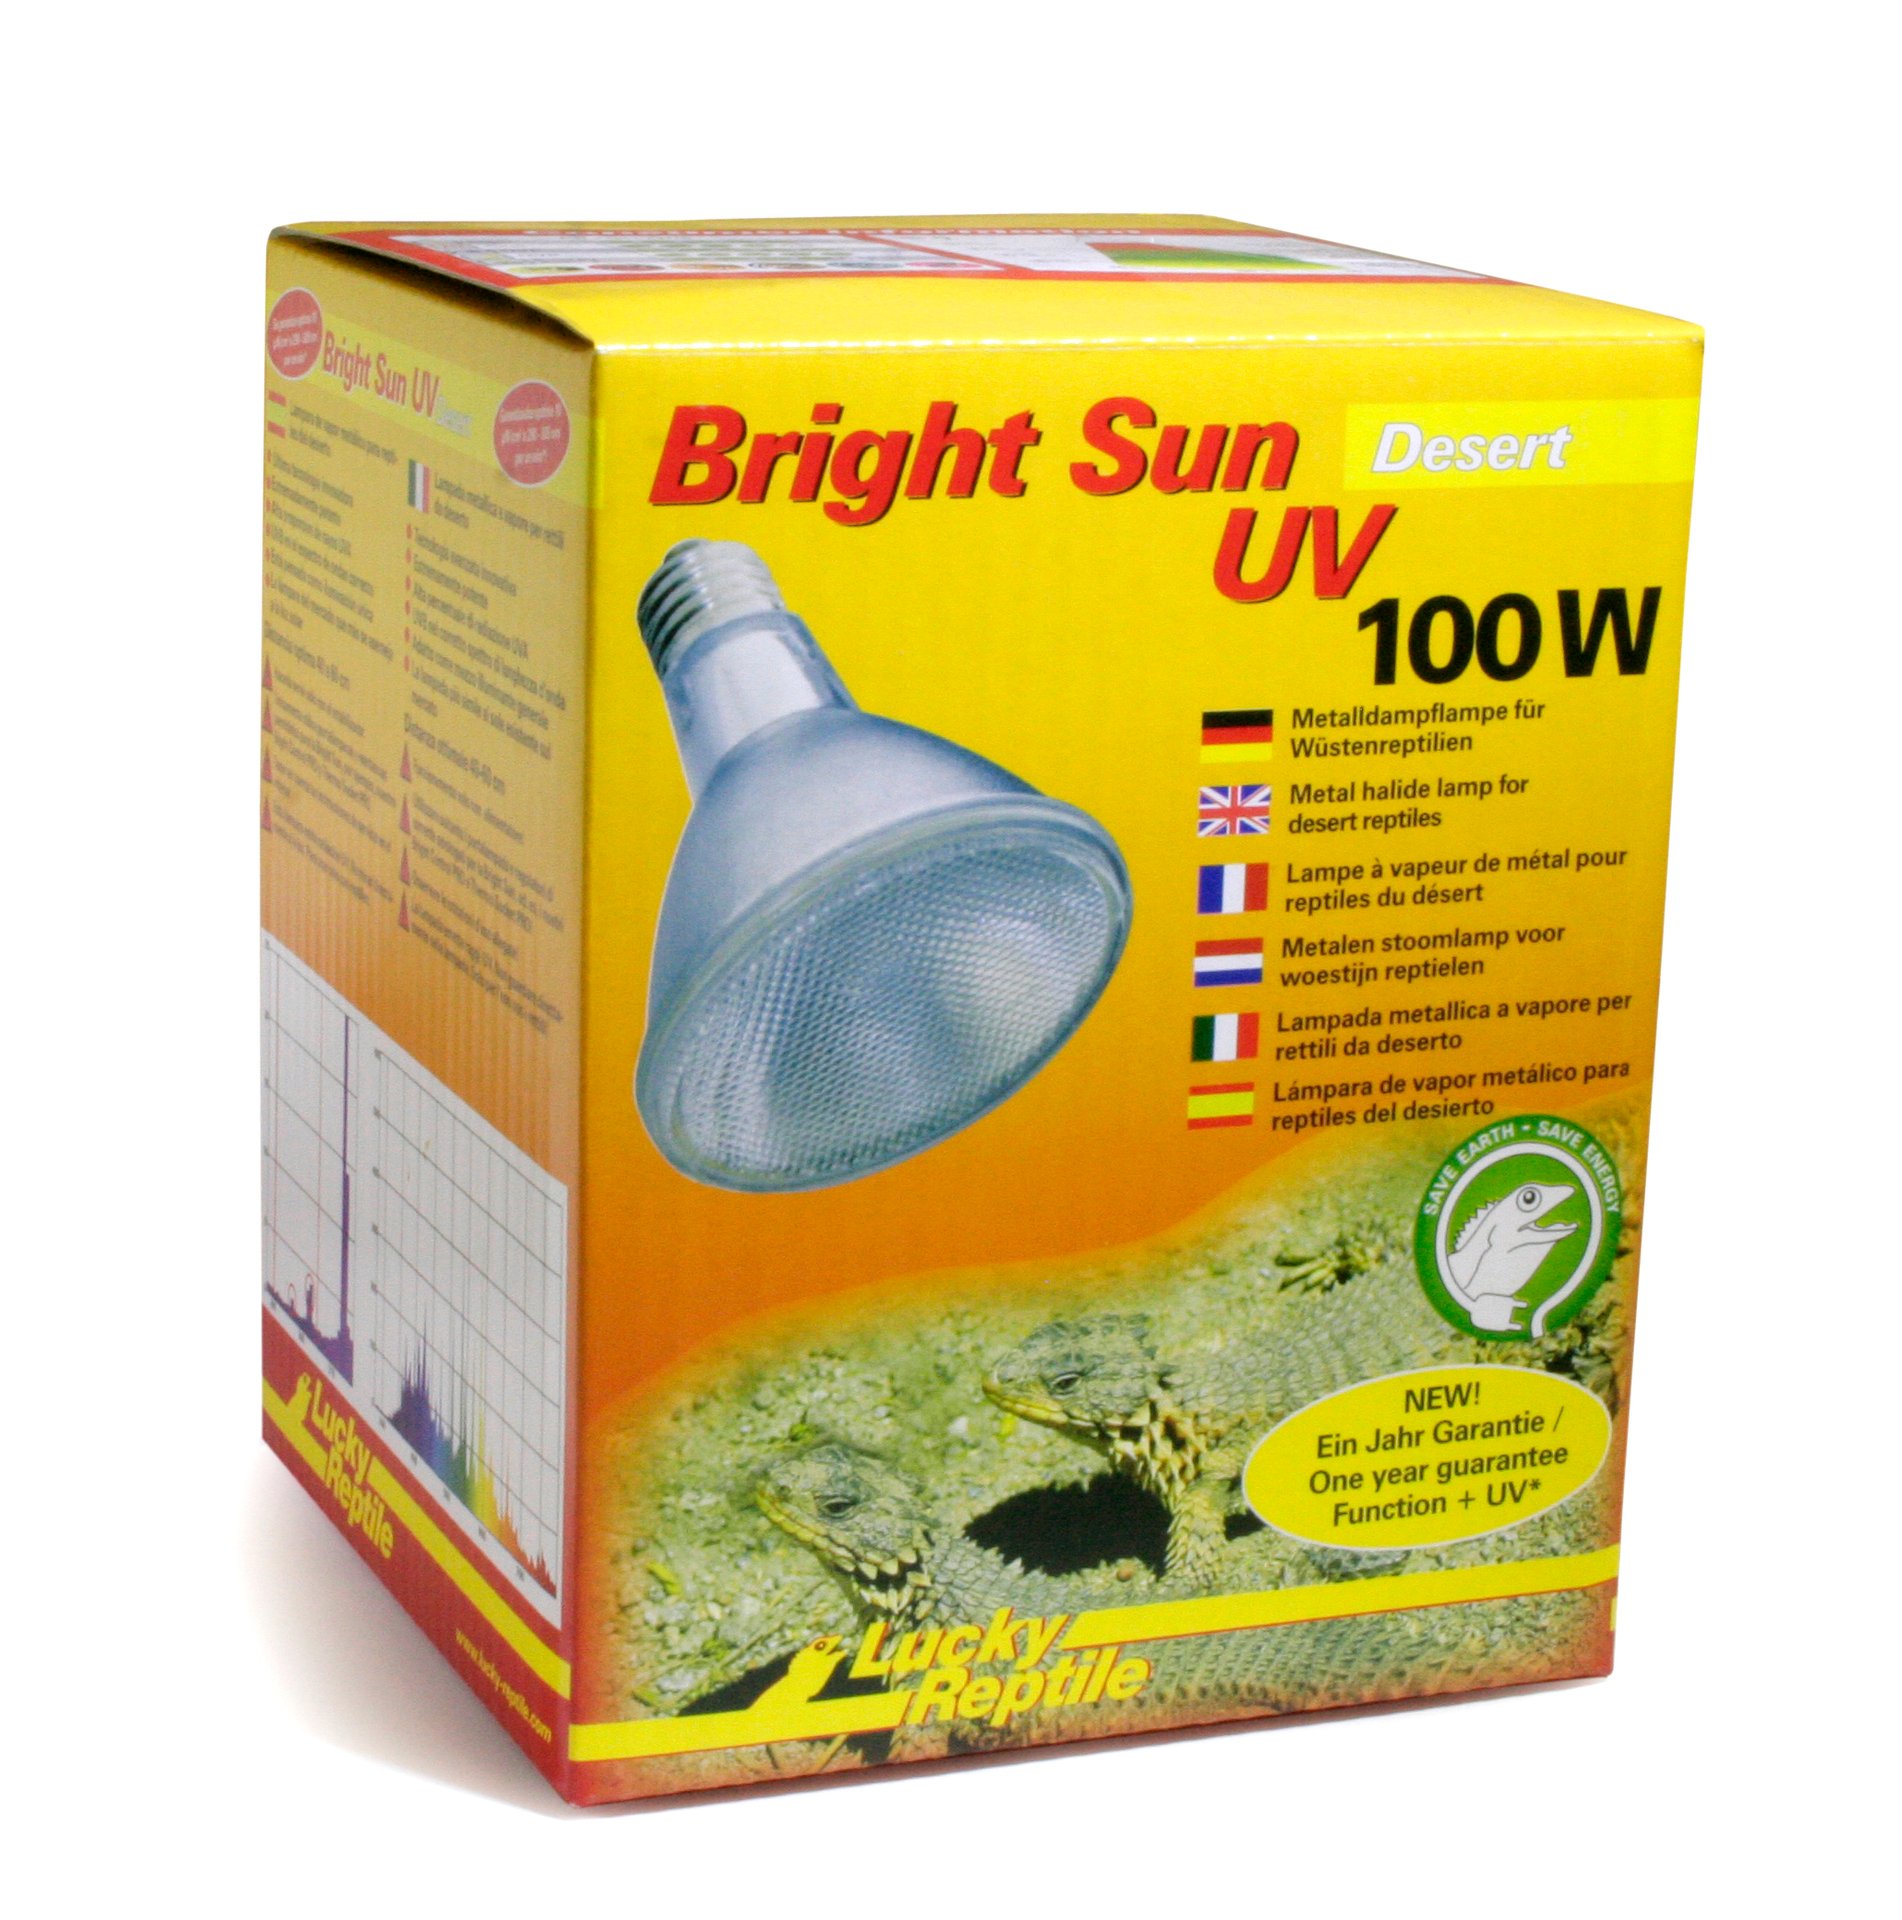 Import-Export Peter Hoch GmbH Bright Sun UV Desert